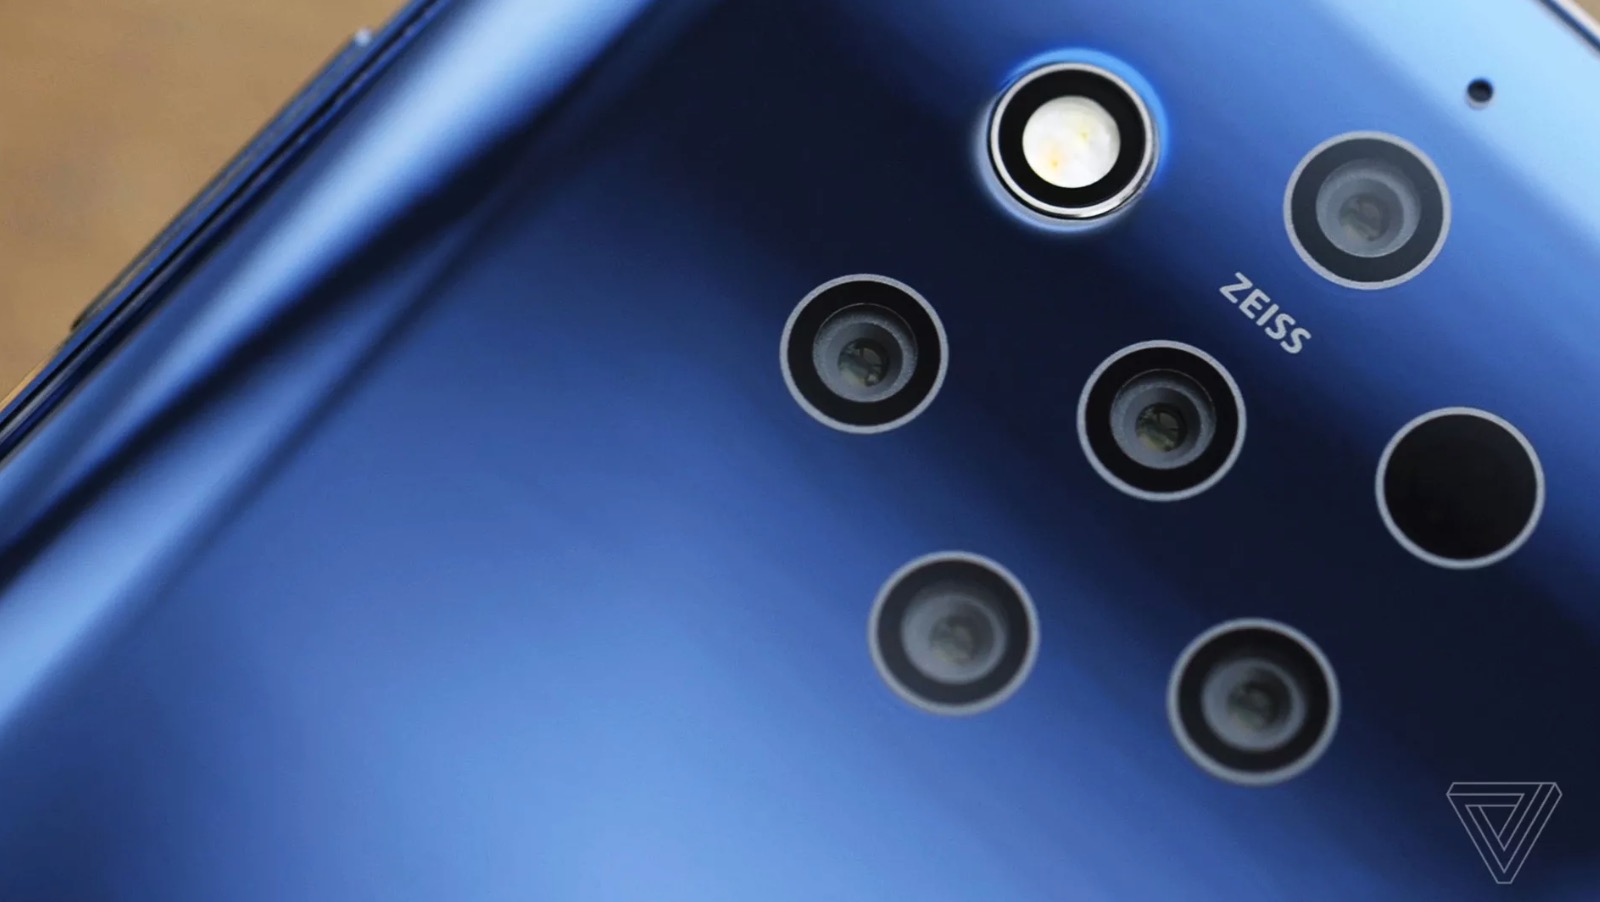 [MWC 2019] Nokia 9
PureView ra mắt sau nhiều lần lỡ hẹn: Snapdragon 845, 5
camera sau, giá 16 triệu đồng